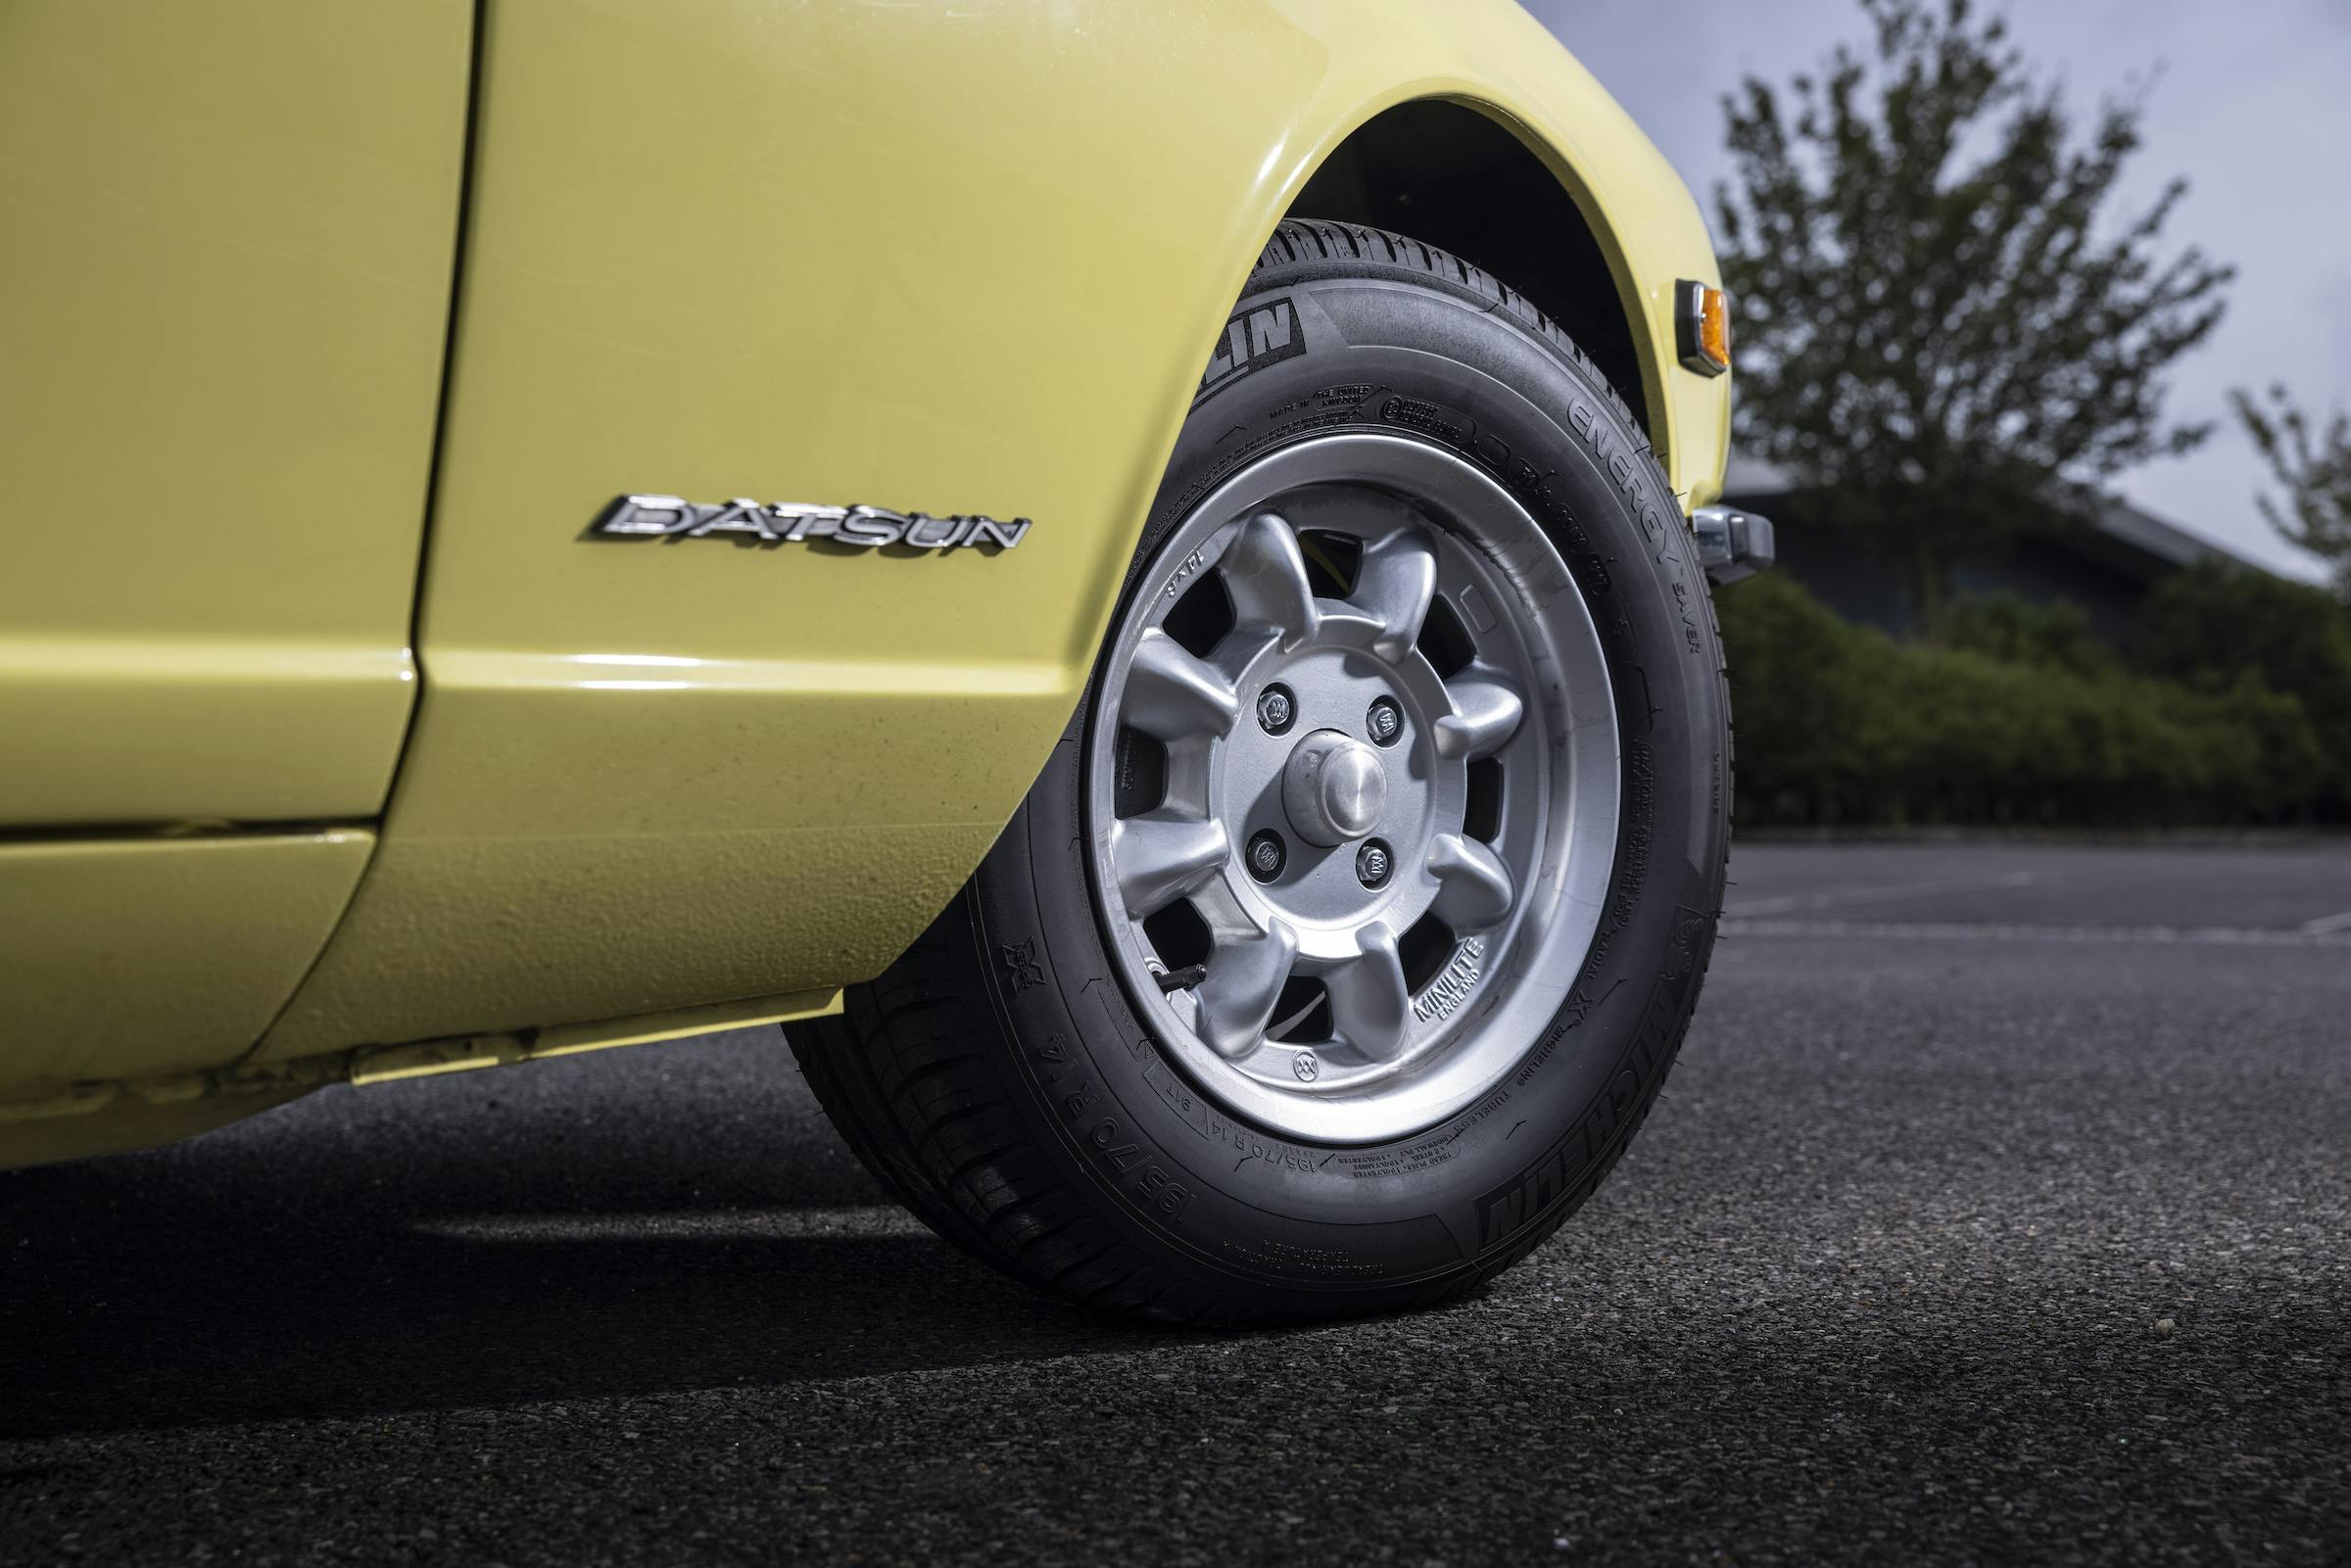 Datsun 240Z front wheel tire